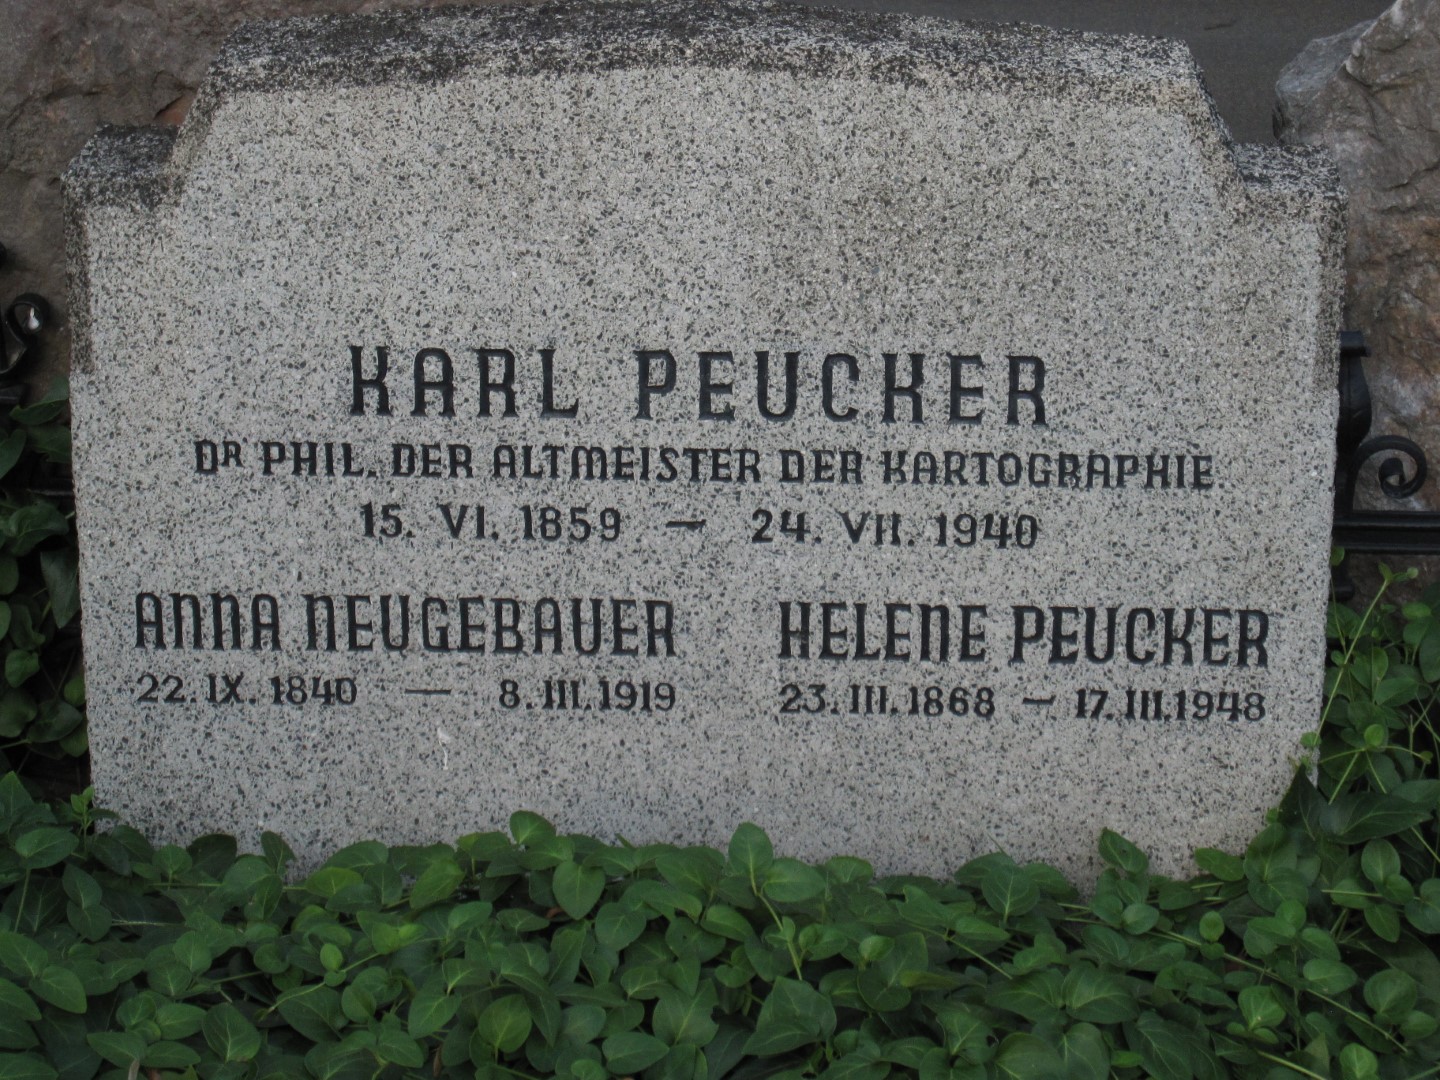 Dr. Karl PEUCKER